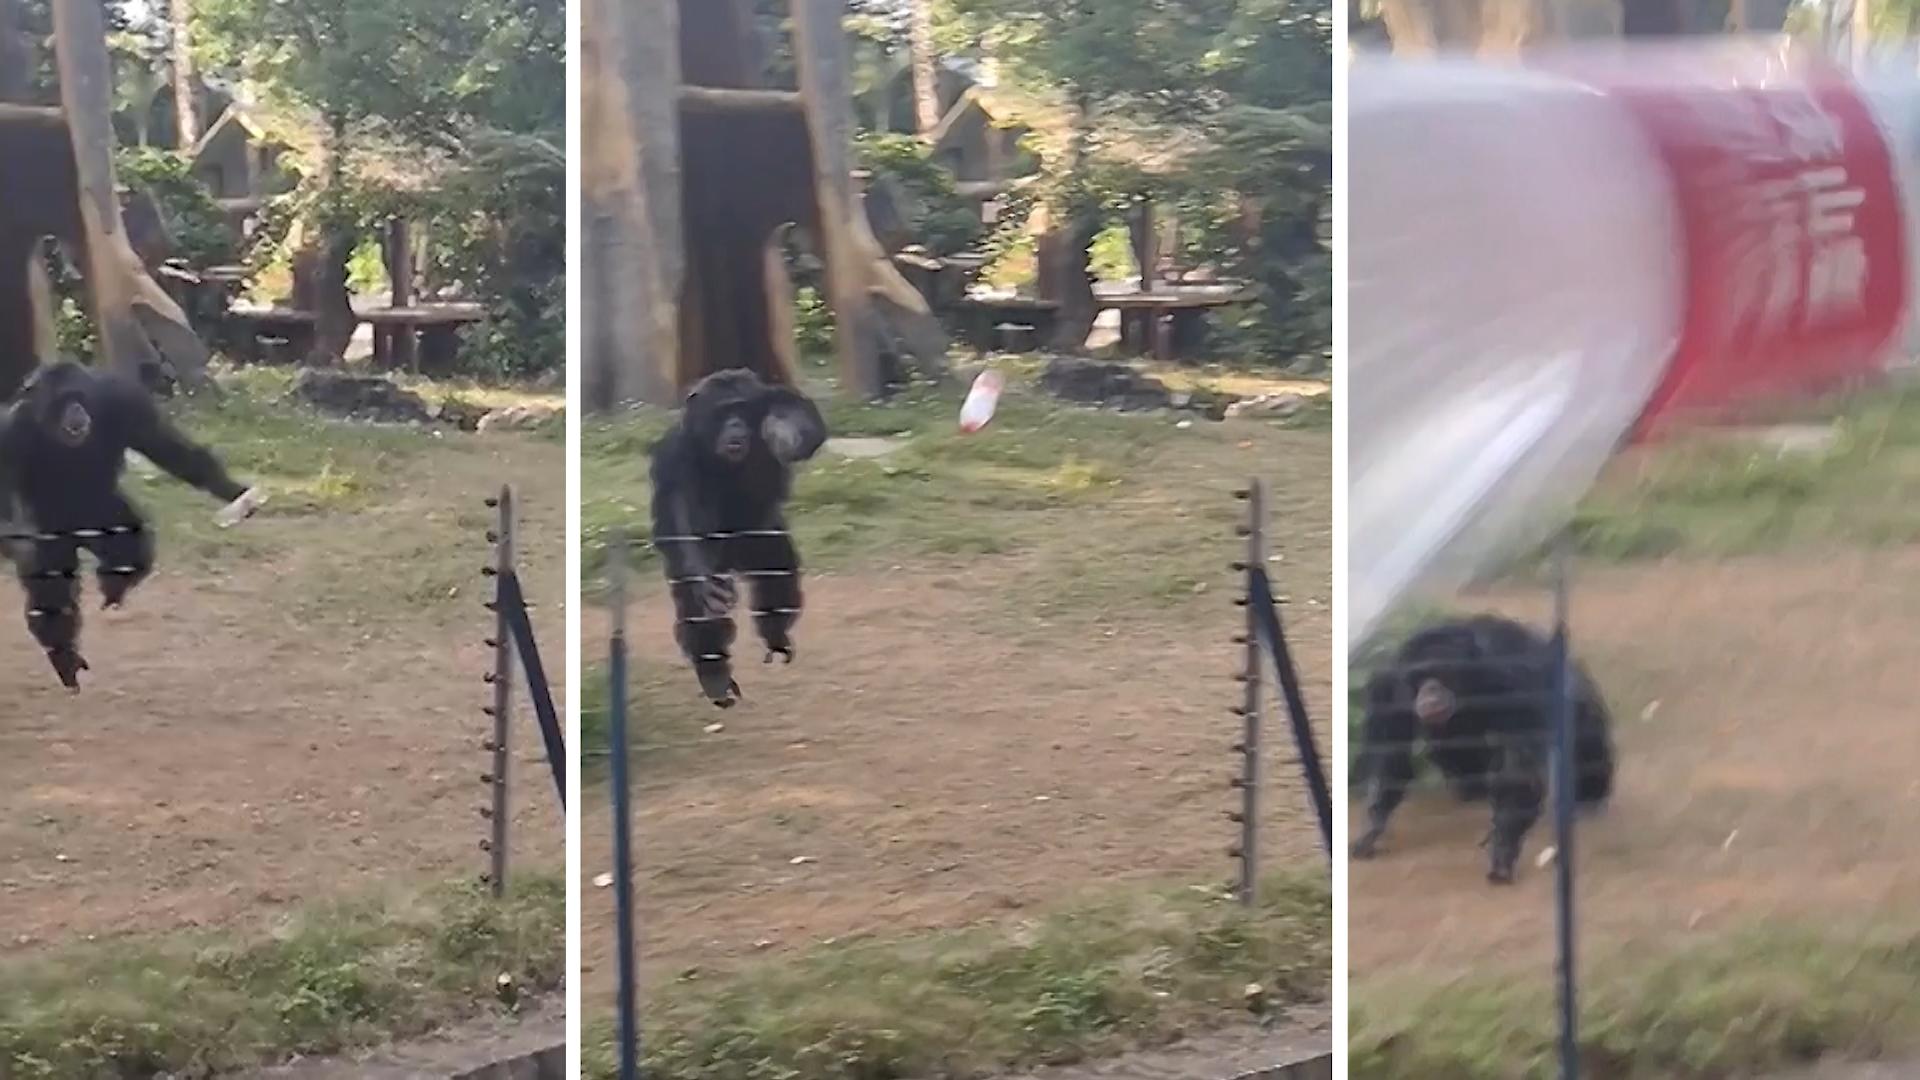 Affe pfeffert Flasche aus Gehege – und trifft Besucherin! Touristen provozierten das Tier zuvor